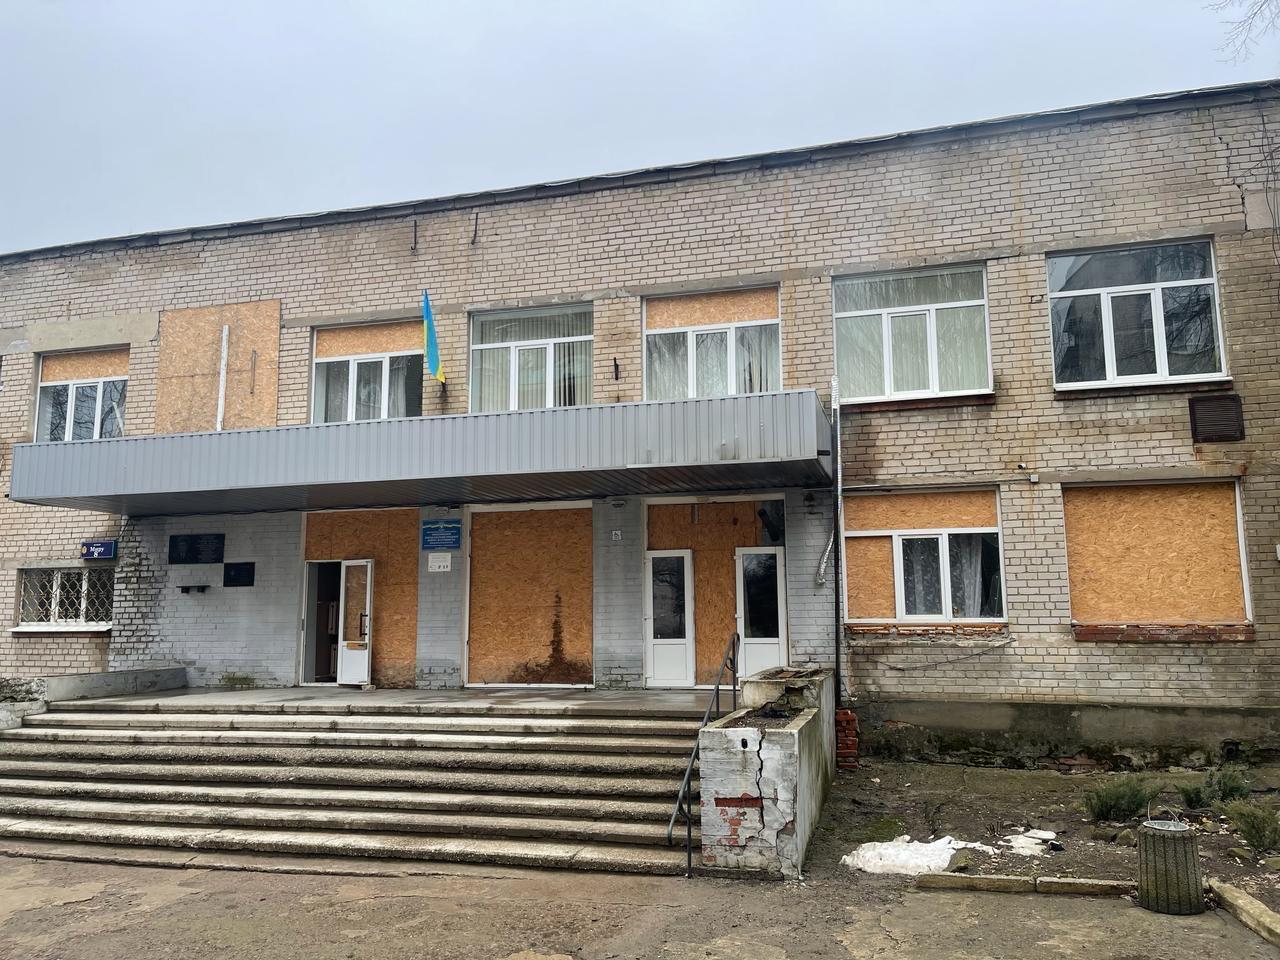 Жители МОТГ в Донецкой области получили около 2 т гуммопомощи от БФ "Огонь ожесточенных не жжет" и партнеров